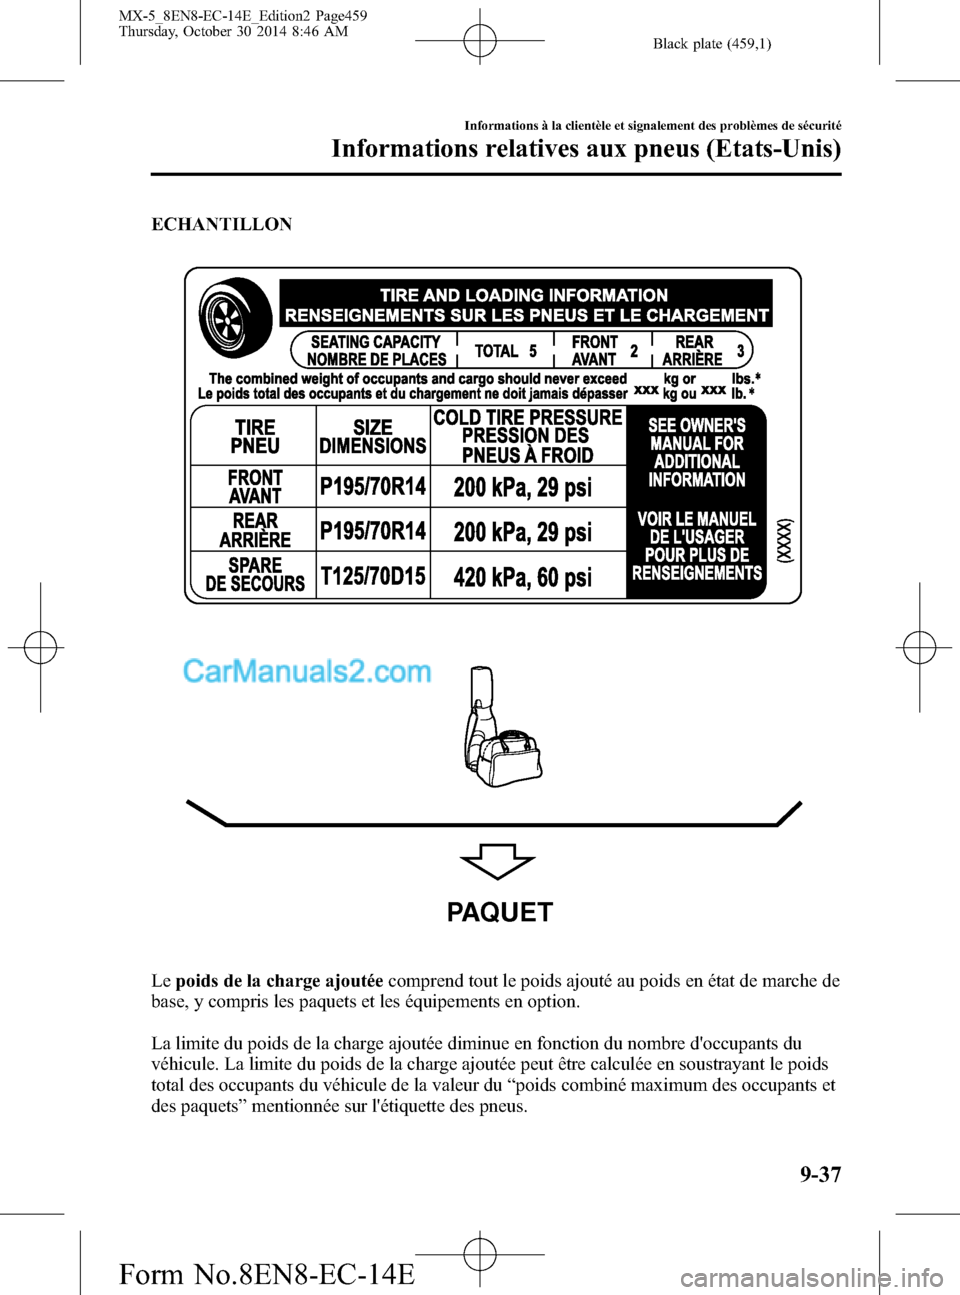 MAZDA MODEL MX-5 2015  Manuel du propriétaire (in French) Black plate (459,1)
ECHANTILLON
PAQUET
Lepoids de la charge ajoutéecomprend tout le poids ajouté au poids en état de marche de
base, y compris les paquets et les équipements en option.
La limite d